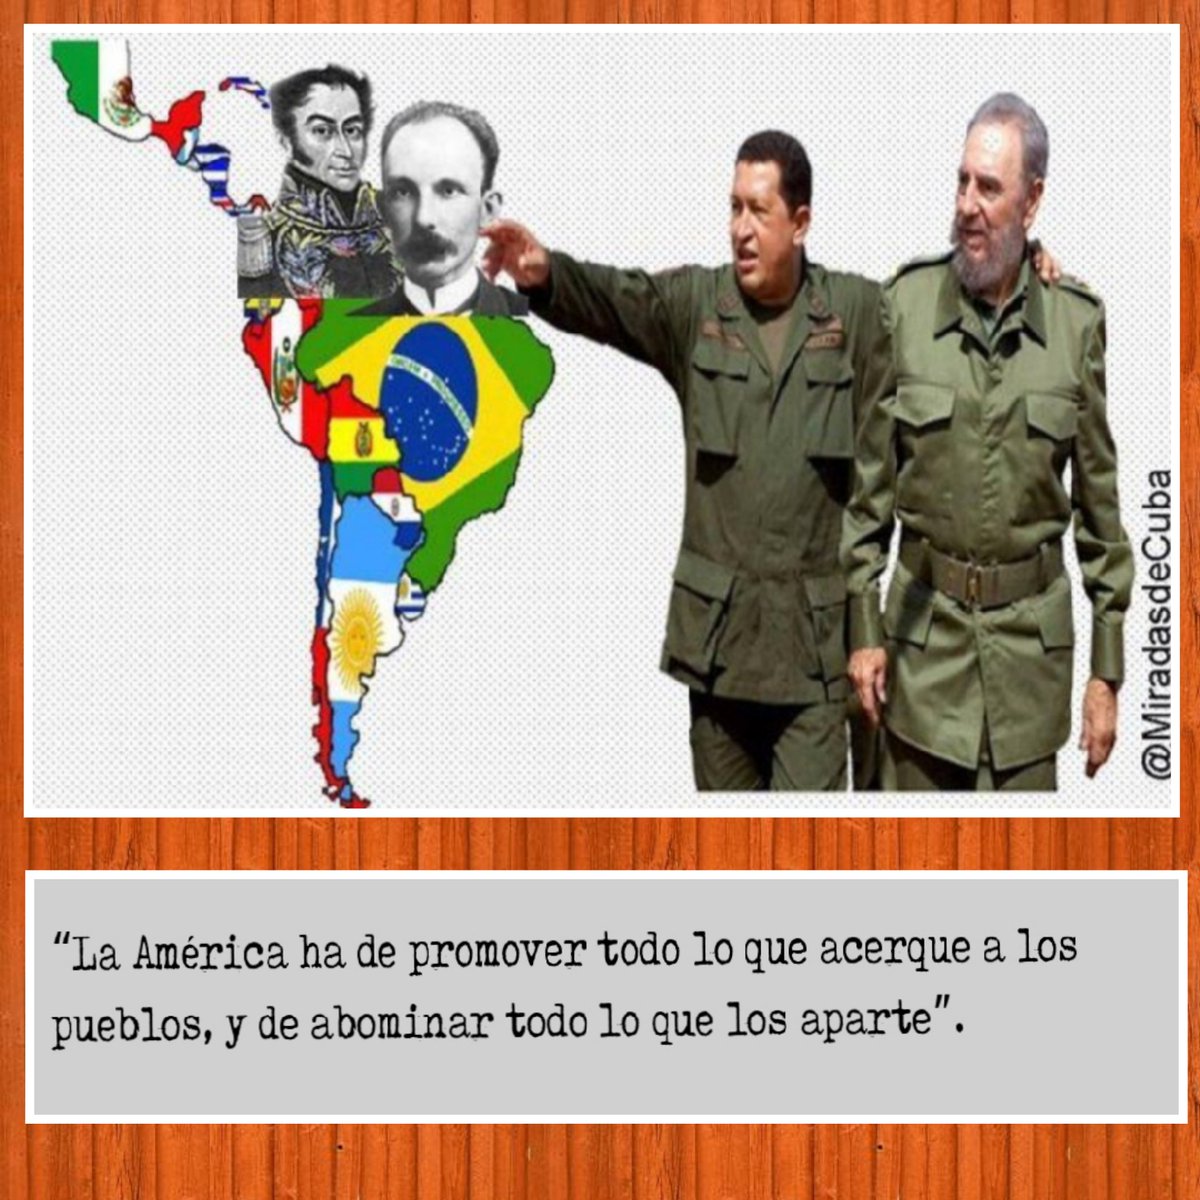 ✍'La América ha de promover todo lo que acerque a los pueblos, y de abominar todo lo que los aparte' José Martí 

#UnidadLatinoamericana 

#DeZurdaTeam  🤝